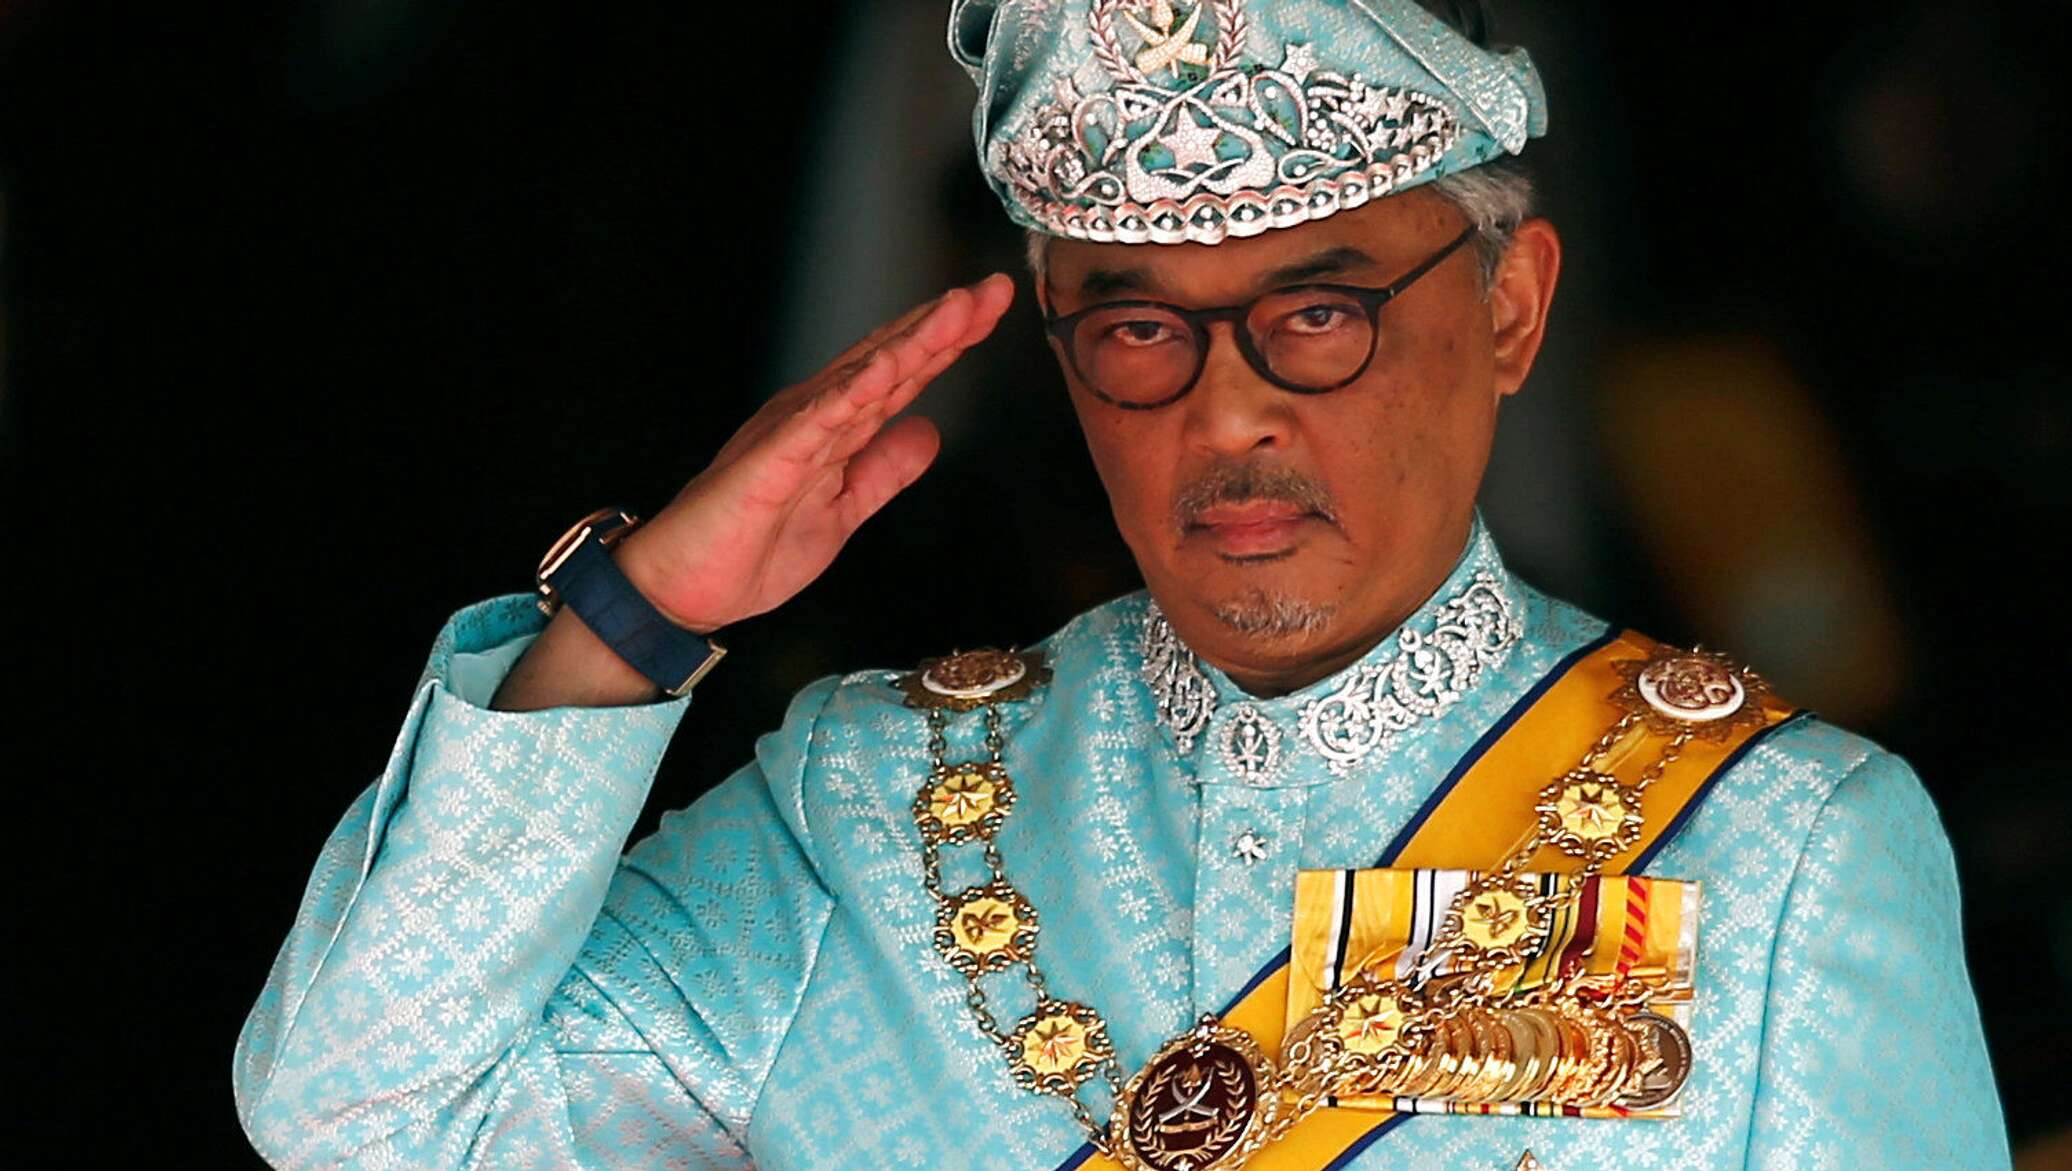 Al ll. Король Малайзии Абдулла. Абдулла II Король Малайзии.